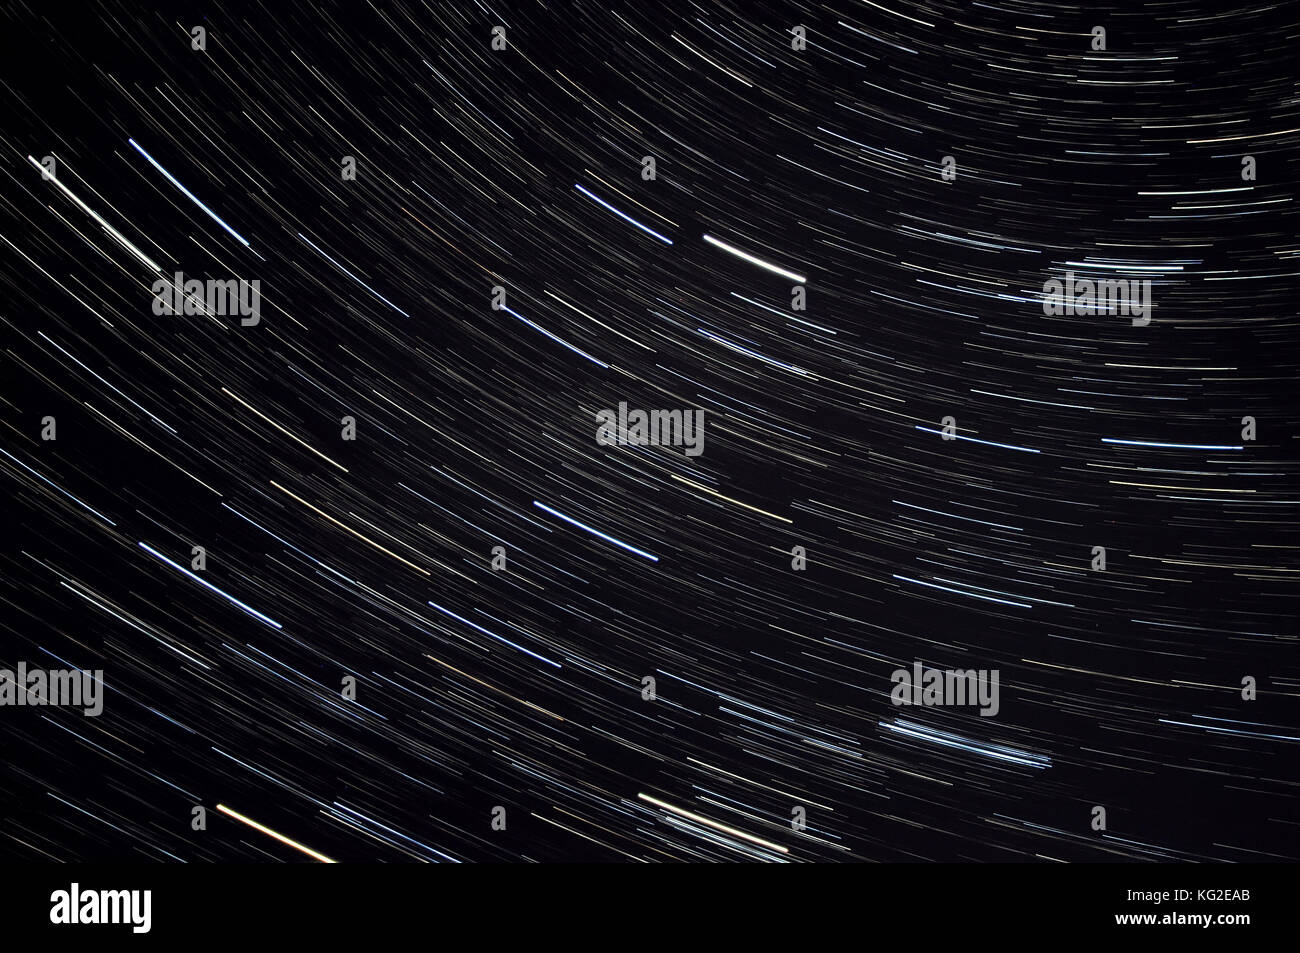 Abstract dekorative Raum Hintergrund mit Spuren von Sternen in der Form der Titel gegen den schwarzen Nachthimmel Stockfoto